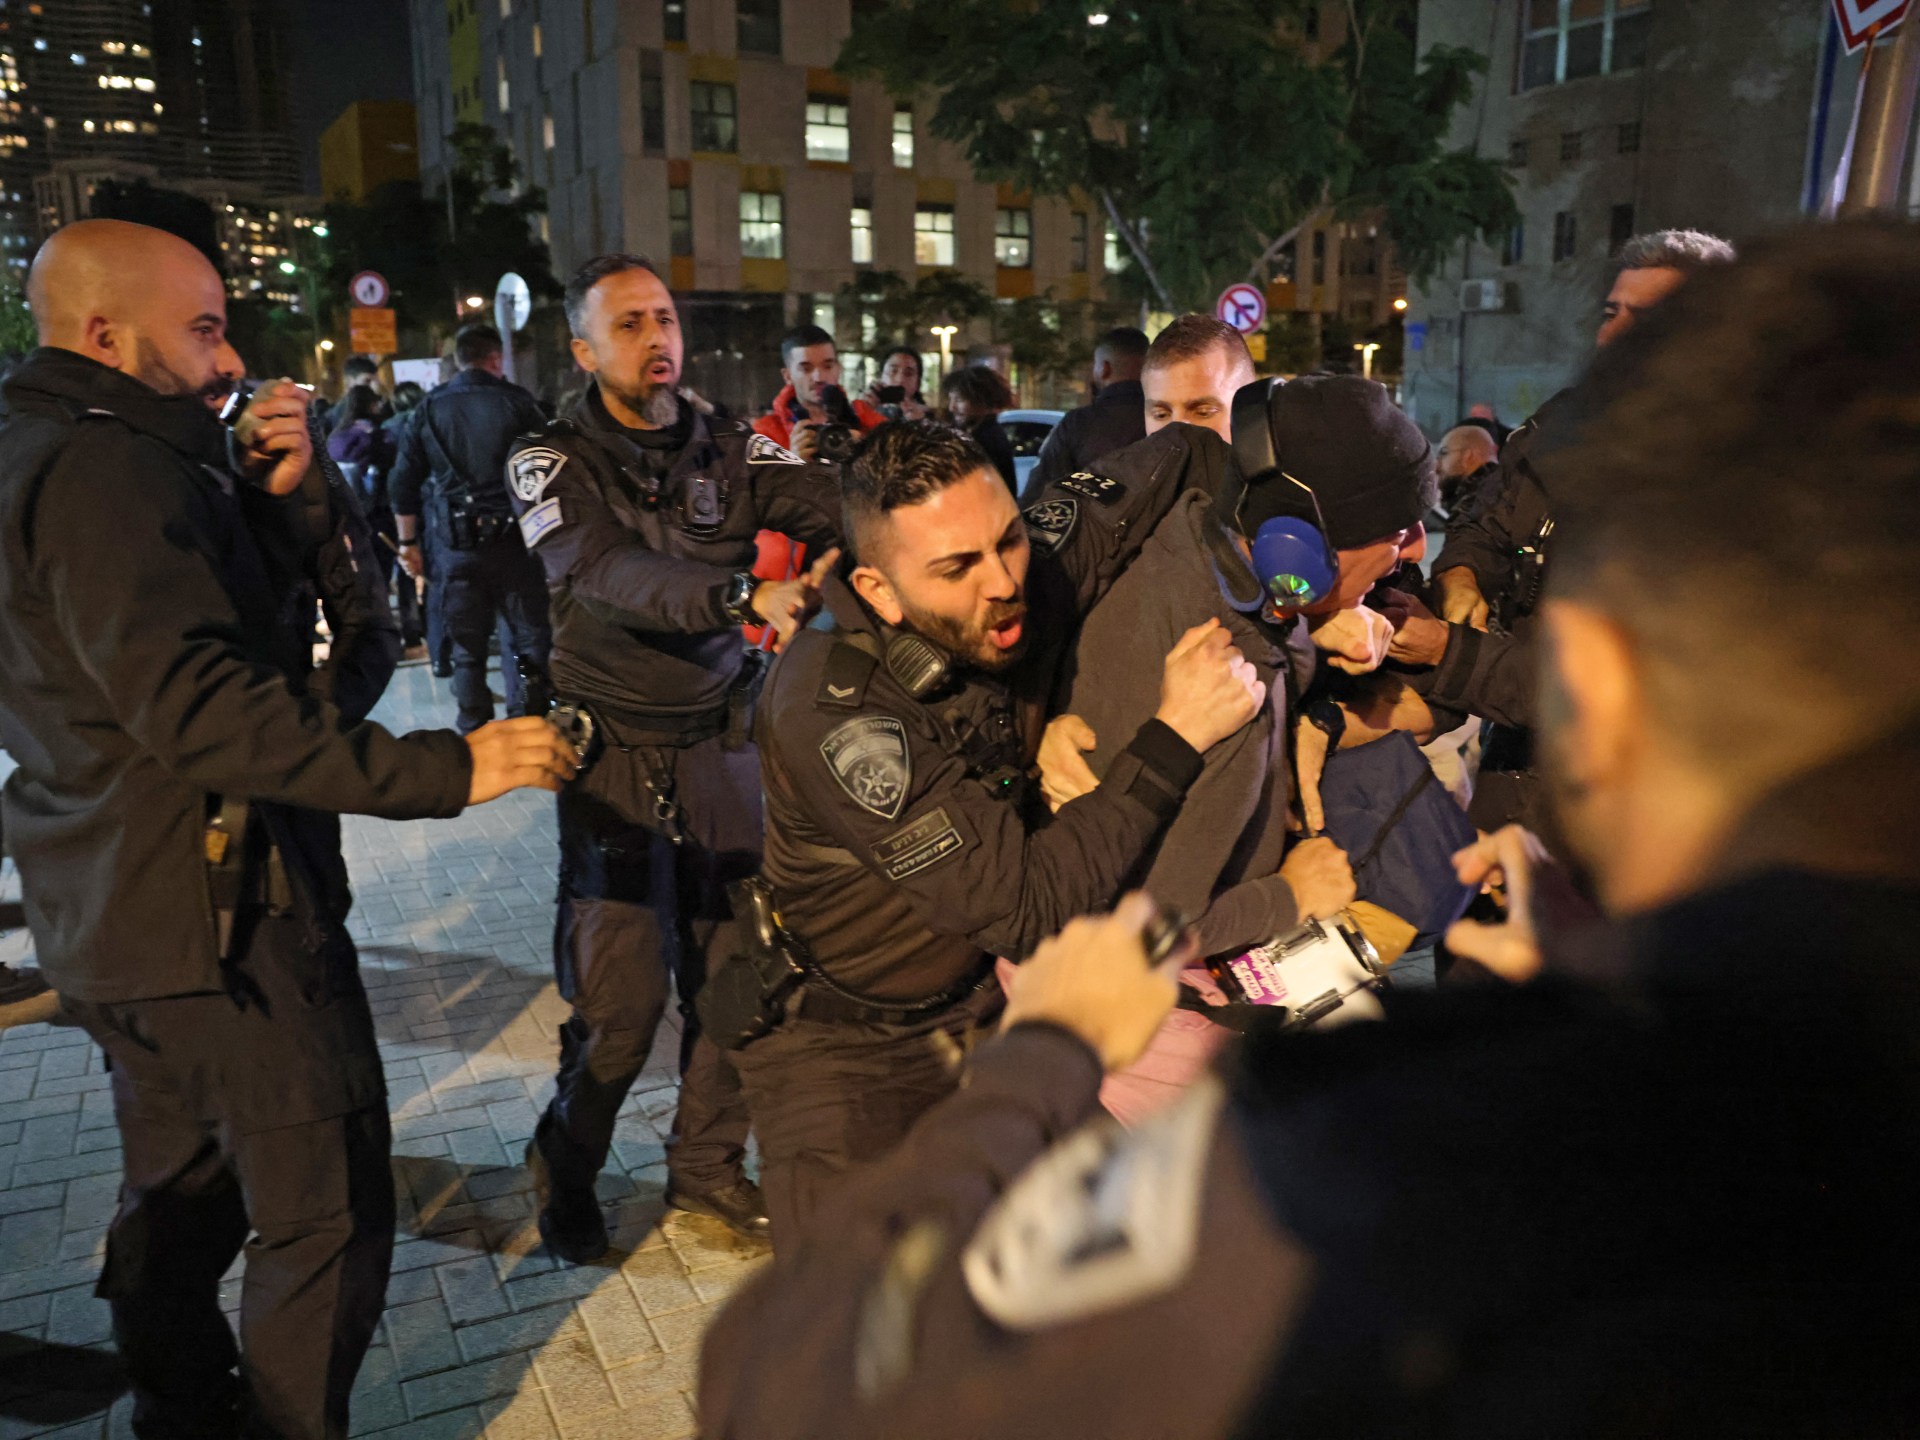 الشرطة الإسرائيلية تفرق بالقوة مظاهرة بتل أبيب تدعو لإنهاء الحرب | أخبار – البوكس نيوز